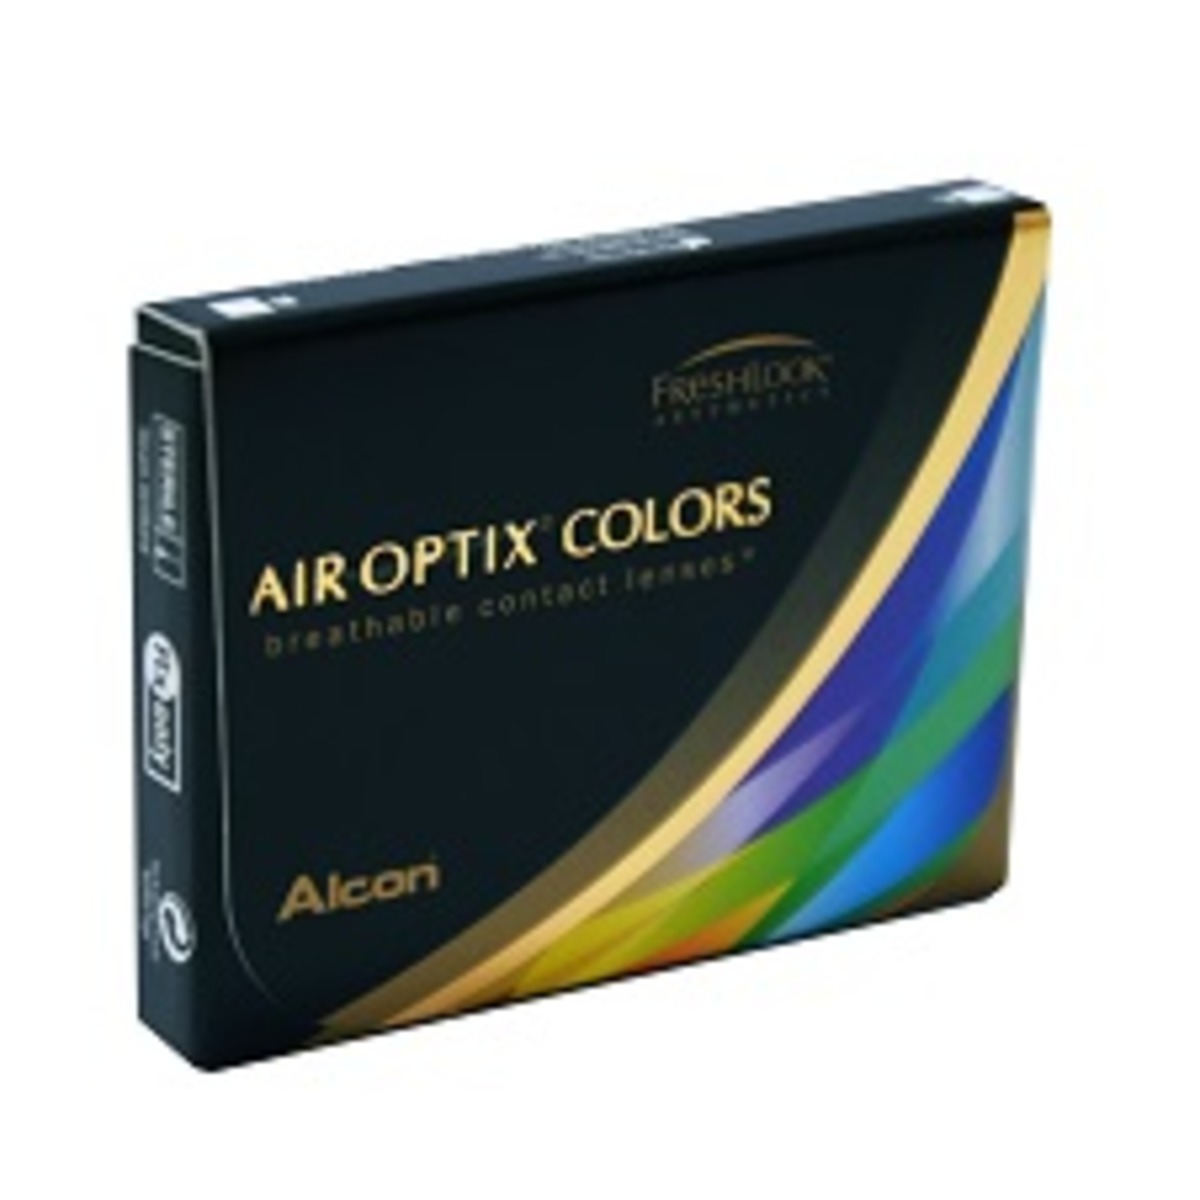 Air Optix Colors Caramel (Pure Hazel)